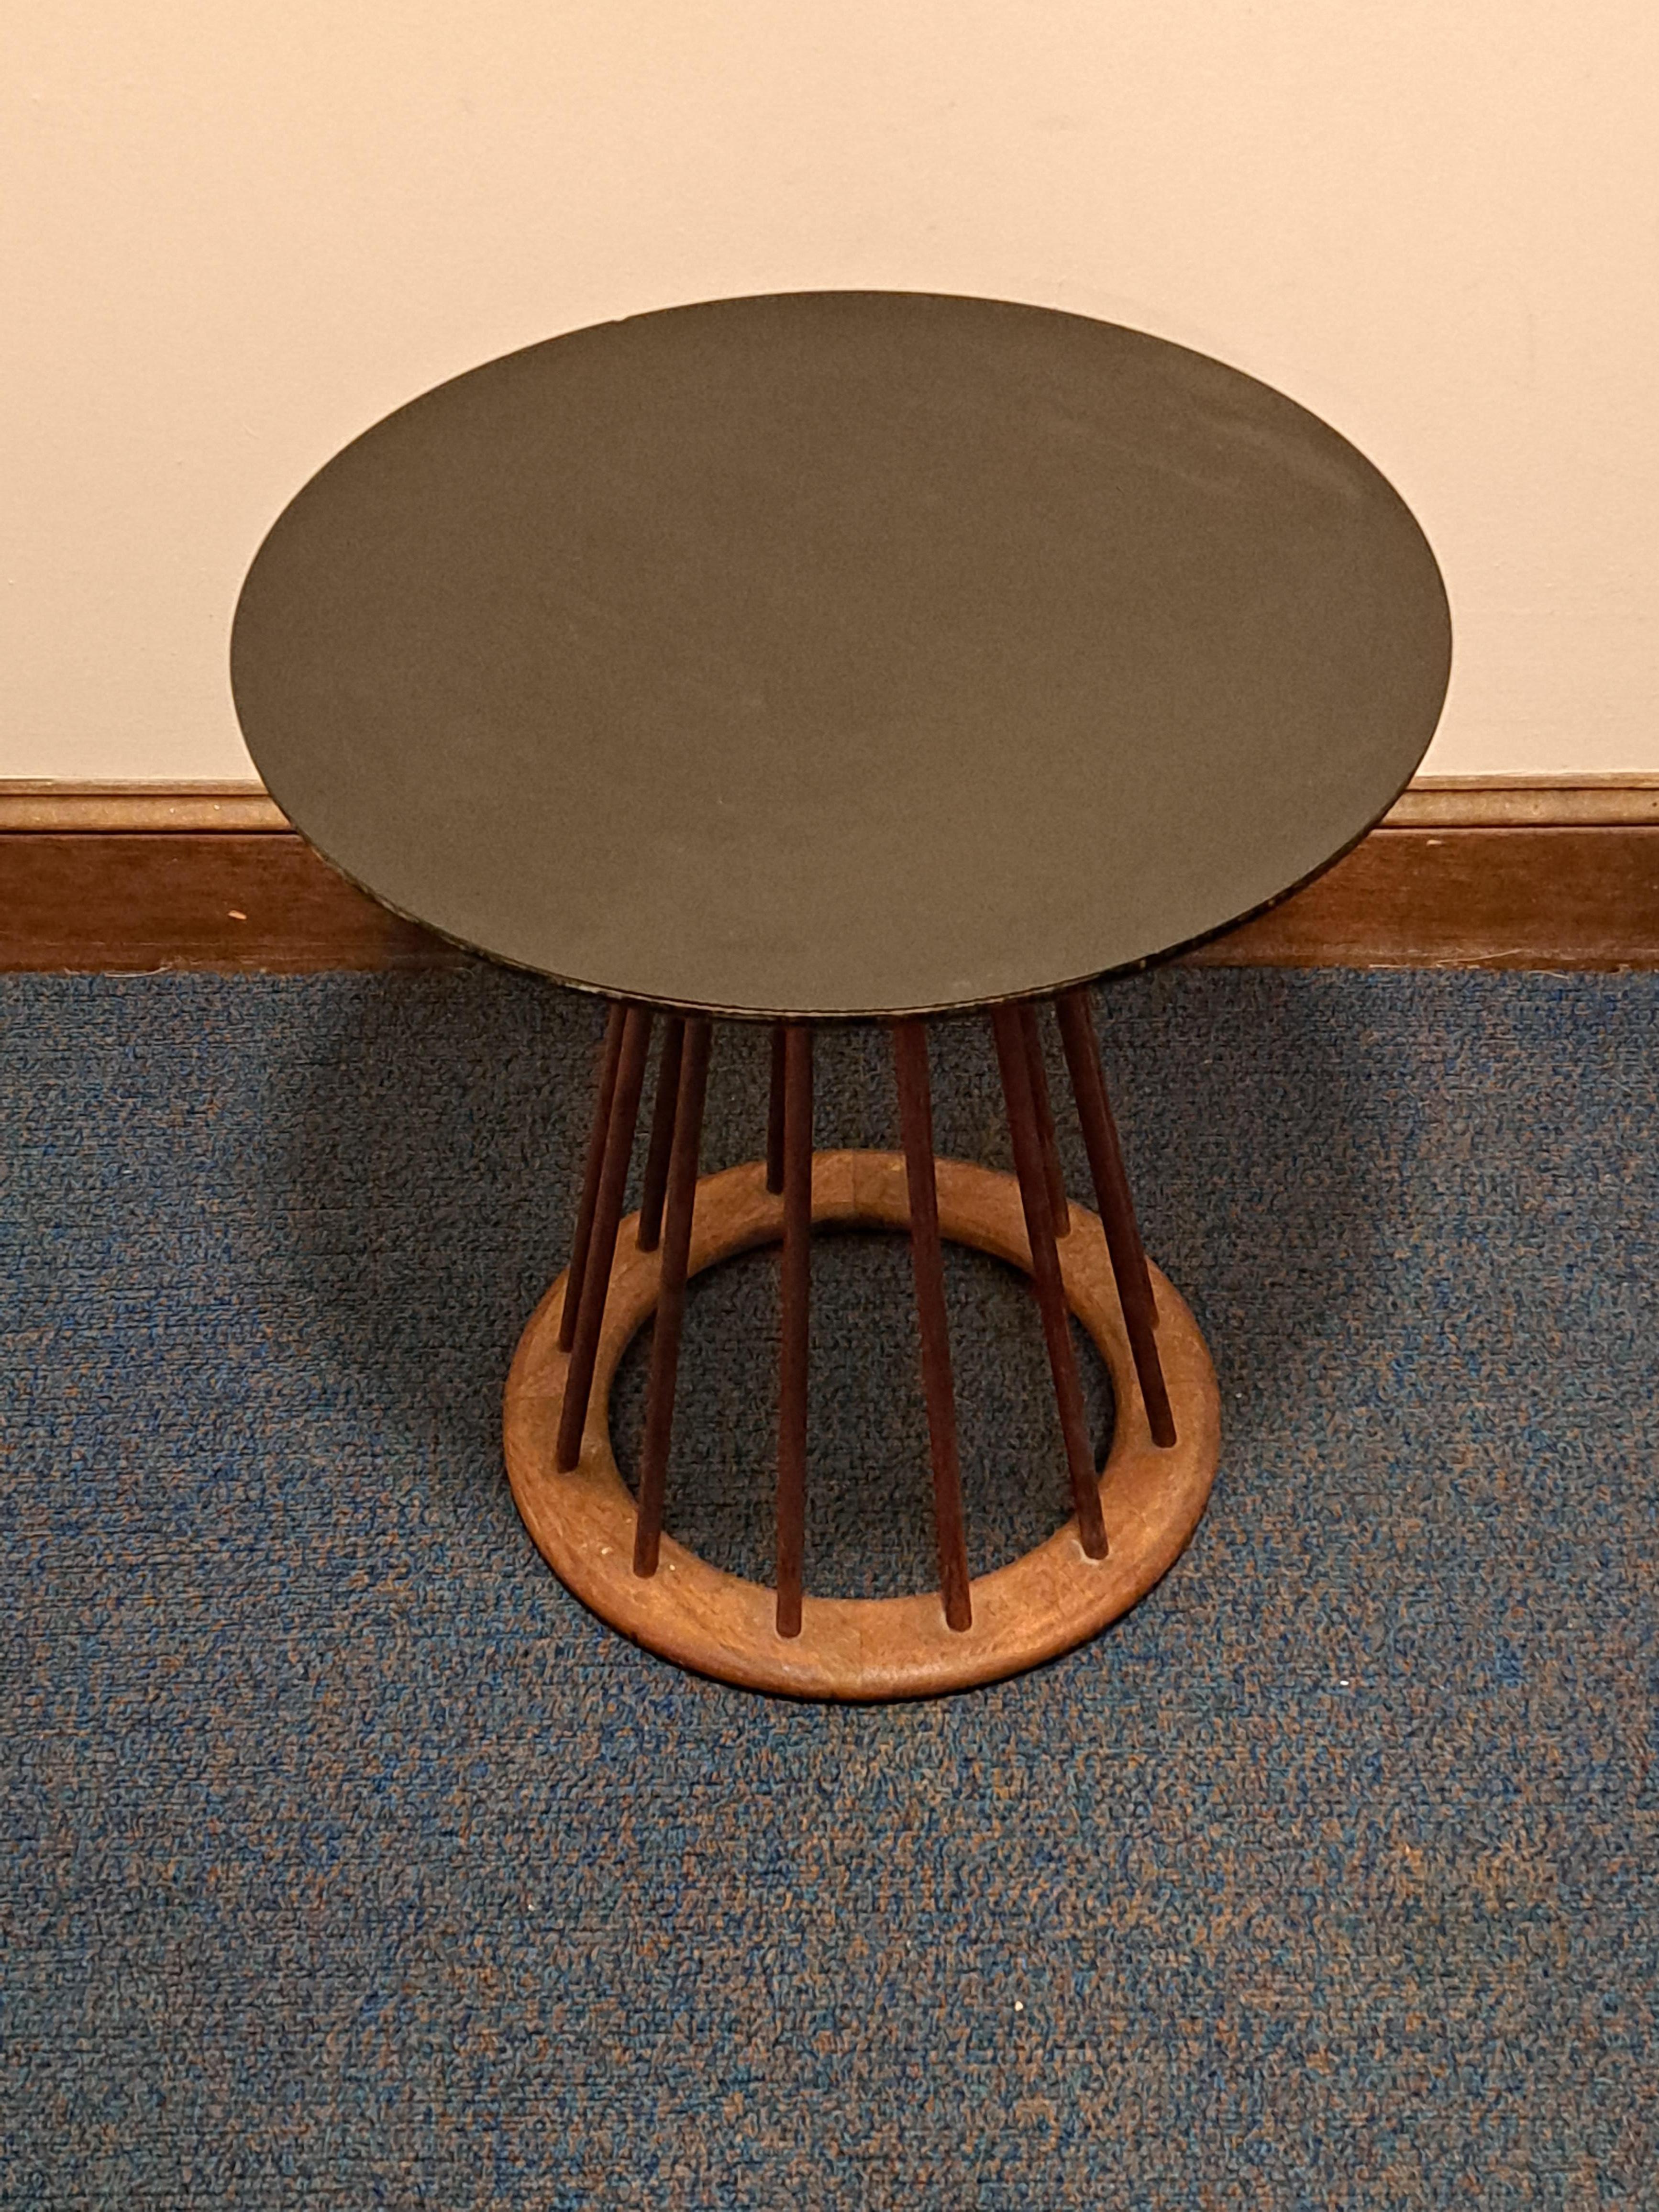 Beistell-/Endtisch mit Spindeln und schwarzer Laminatplatte. Der Tisch wurde von Arthur Umanoff aus Walnussholz entworfen. Der Tisch hat eine runde Basis mit schmalen Holzspindeln, die sich an der Tischplatte treffen.